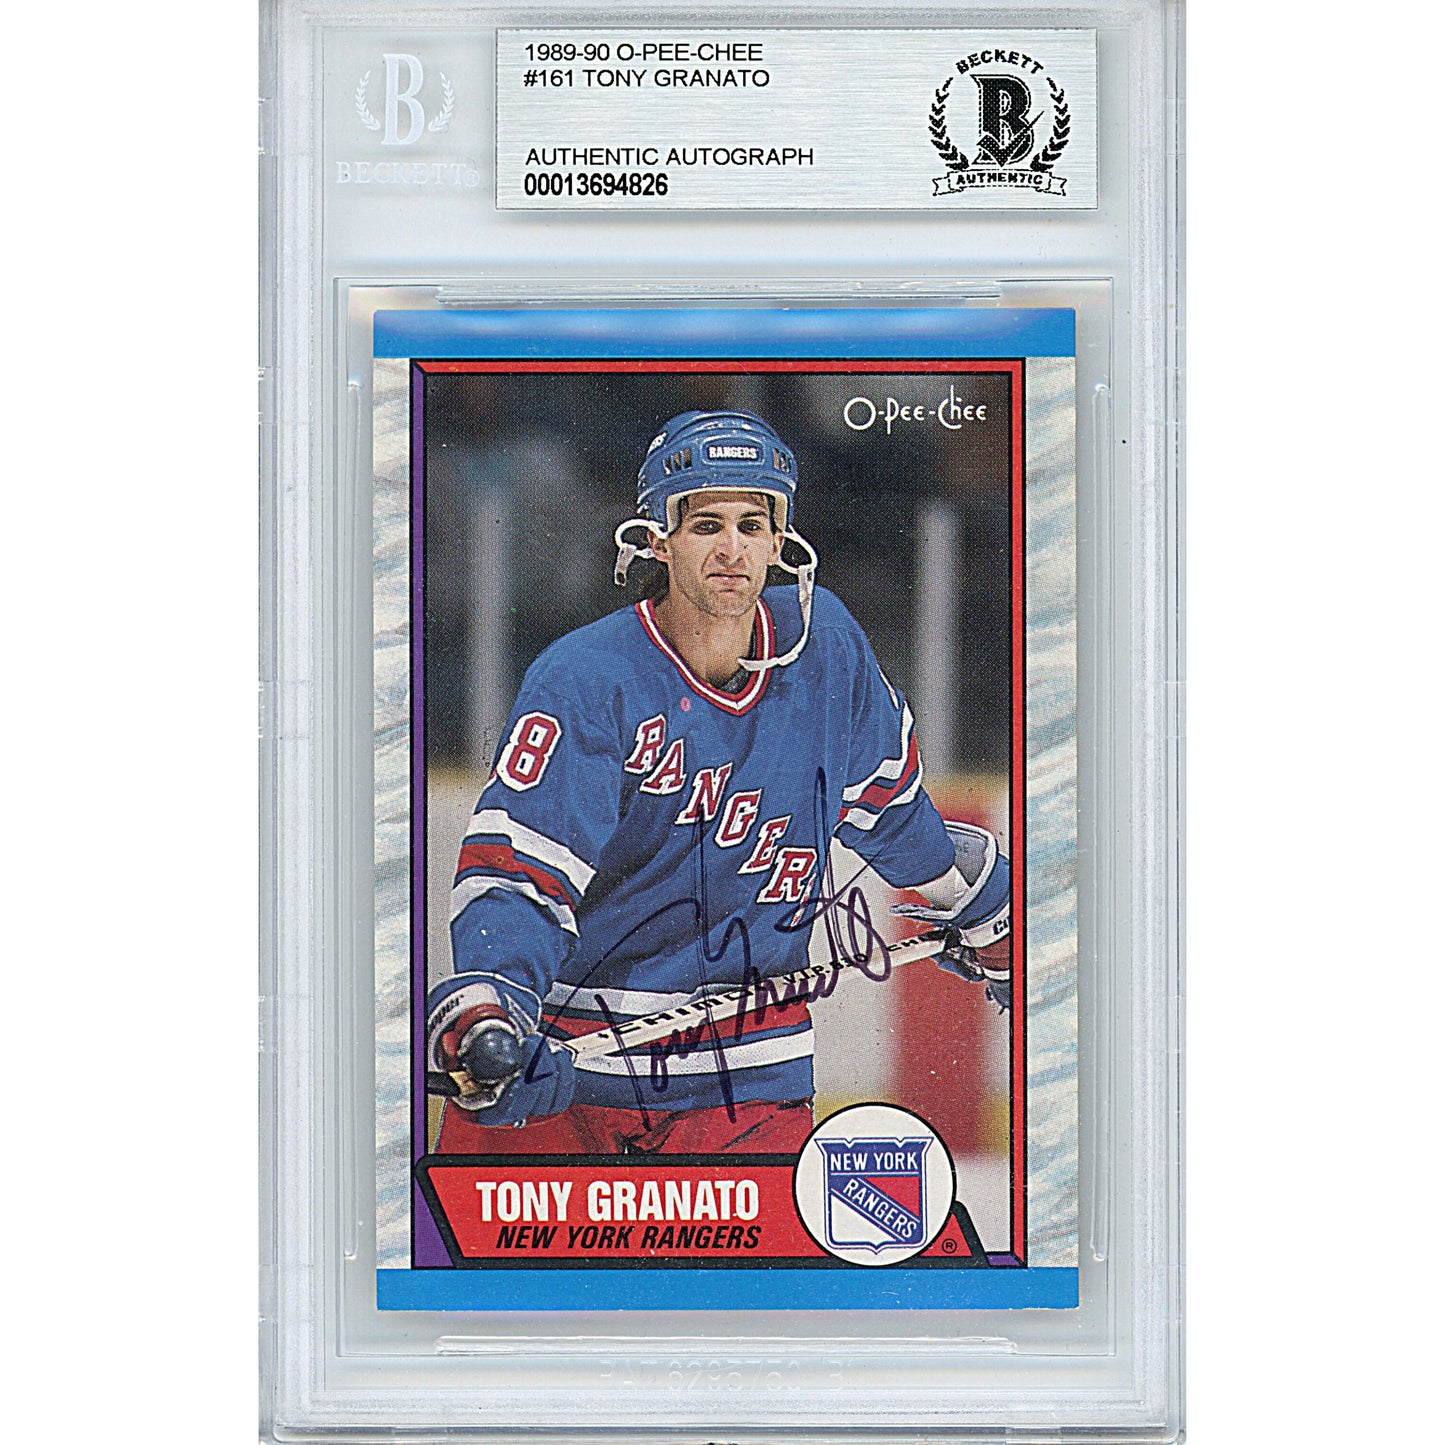 Hockey- Autographed- Tony Granato Signed New York Rangers 1989-1990 O-Pee-Chee Hockey Card Beckett BAS Slabbed 00013694826 - 101